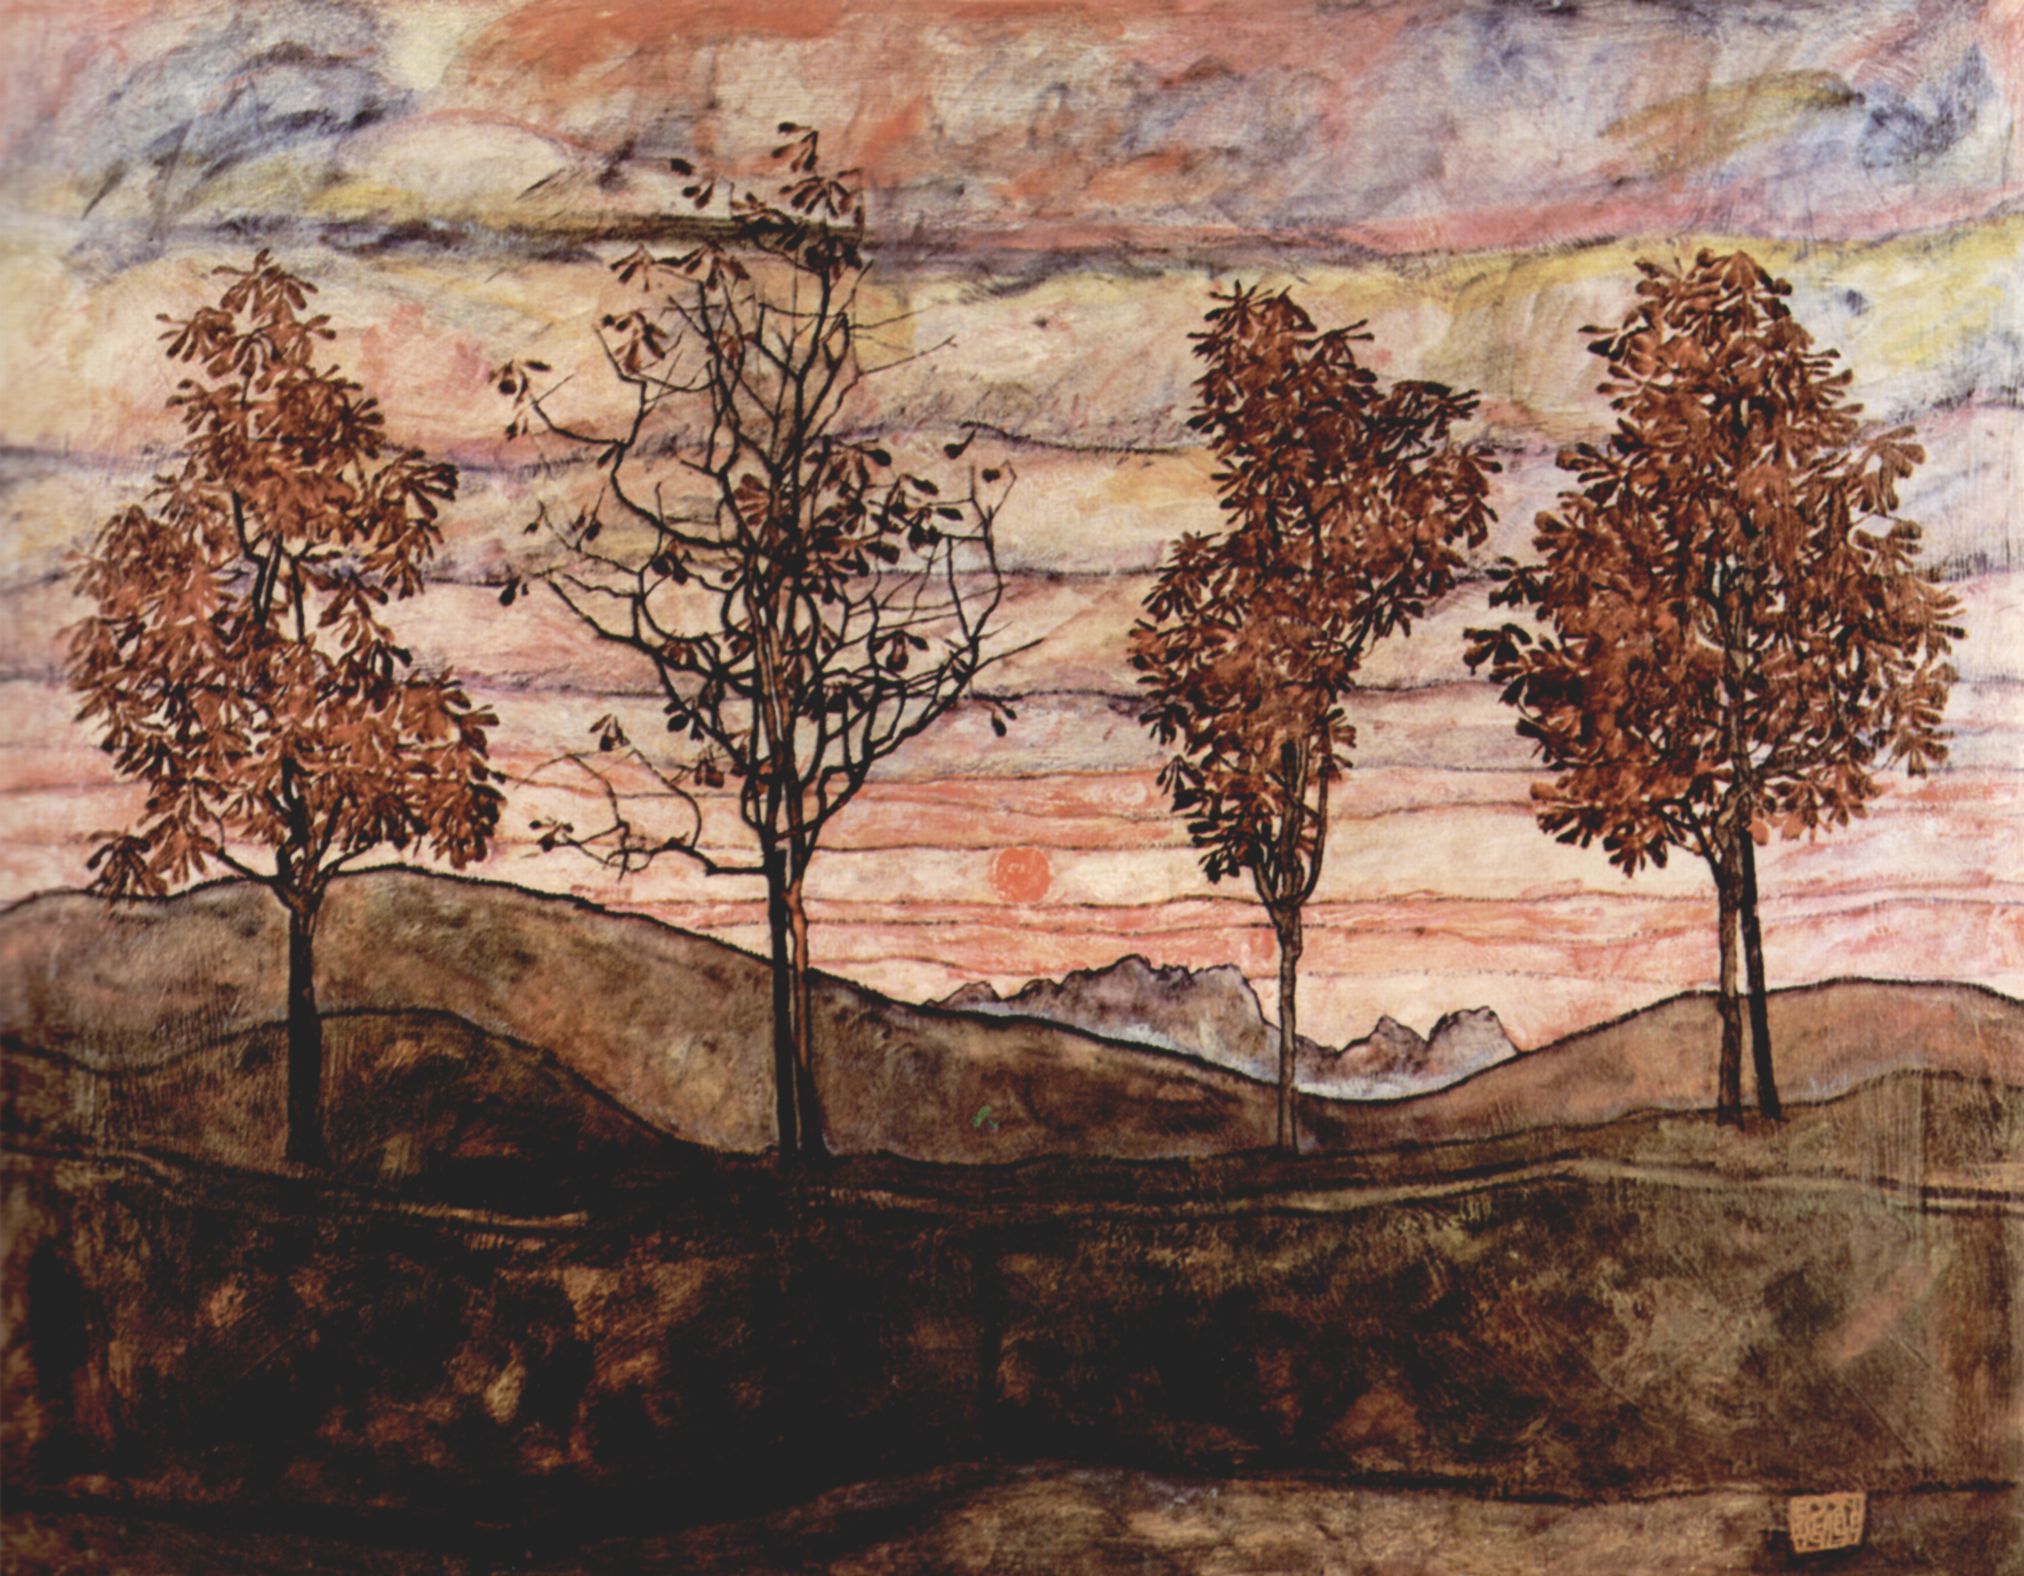 Four Trees by Egon Schiele - 1917 - 110.5 x 141 cm Österreichische Galerie Belvedere